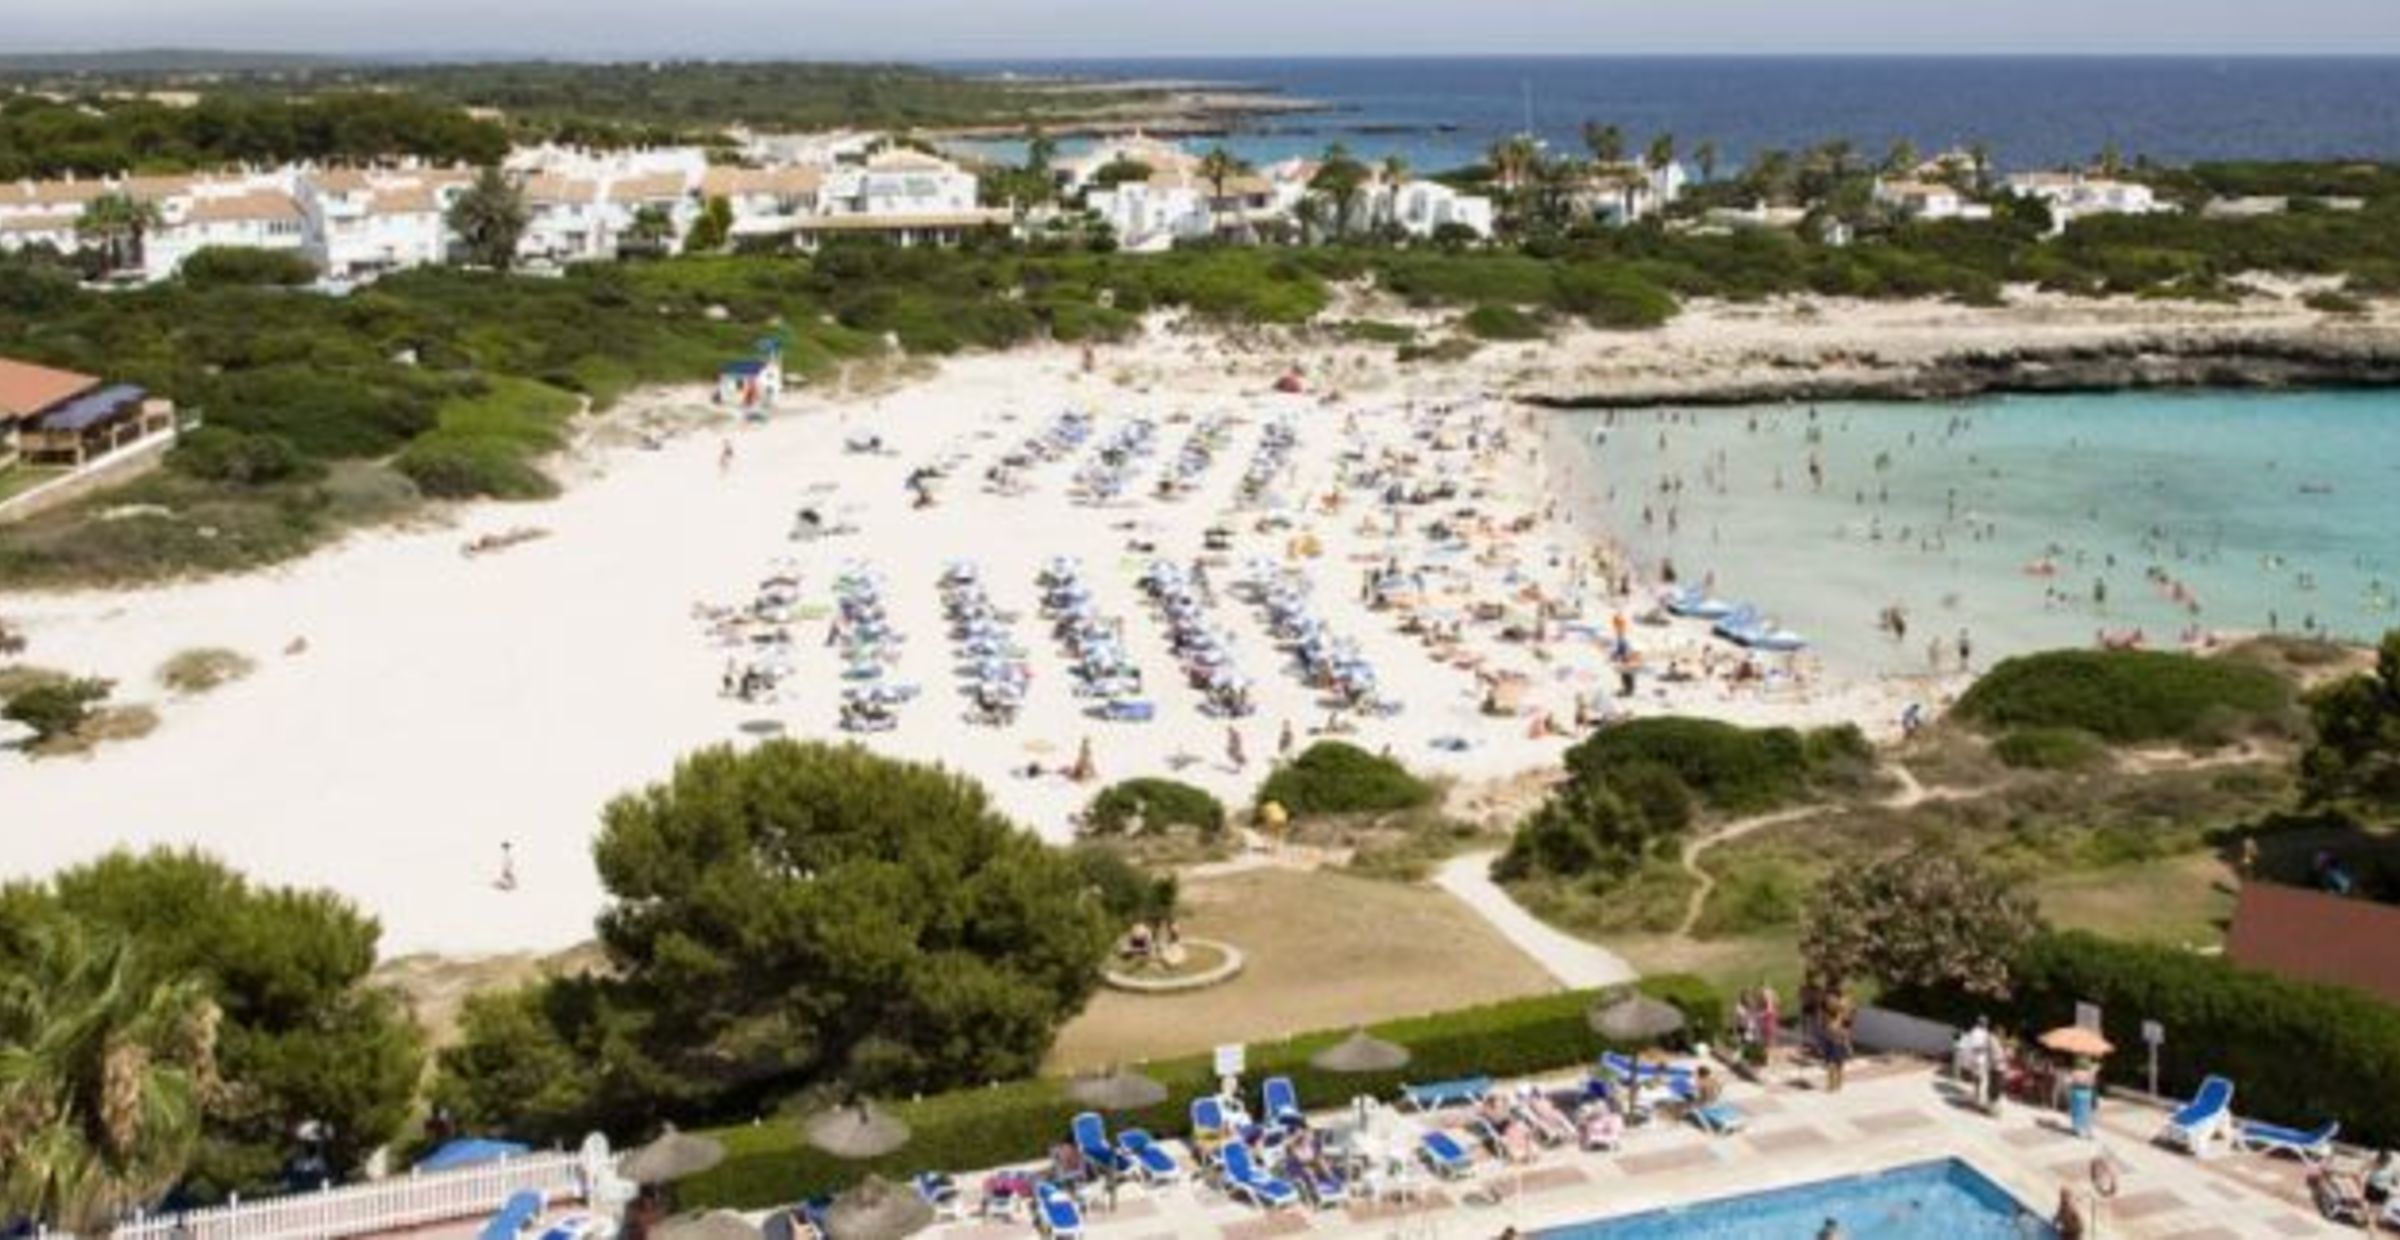 Hitta hotell i Cala'n Bosch, Menorca